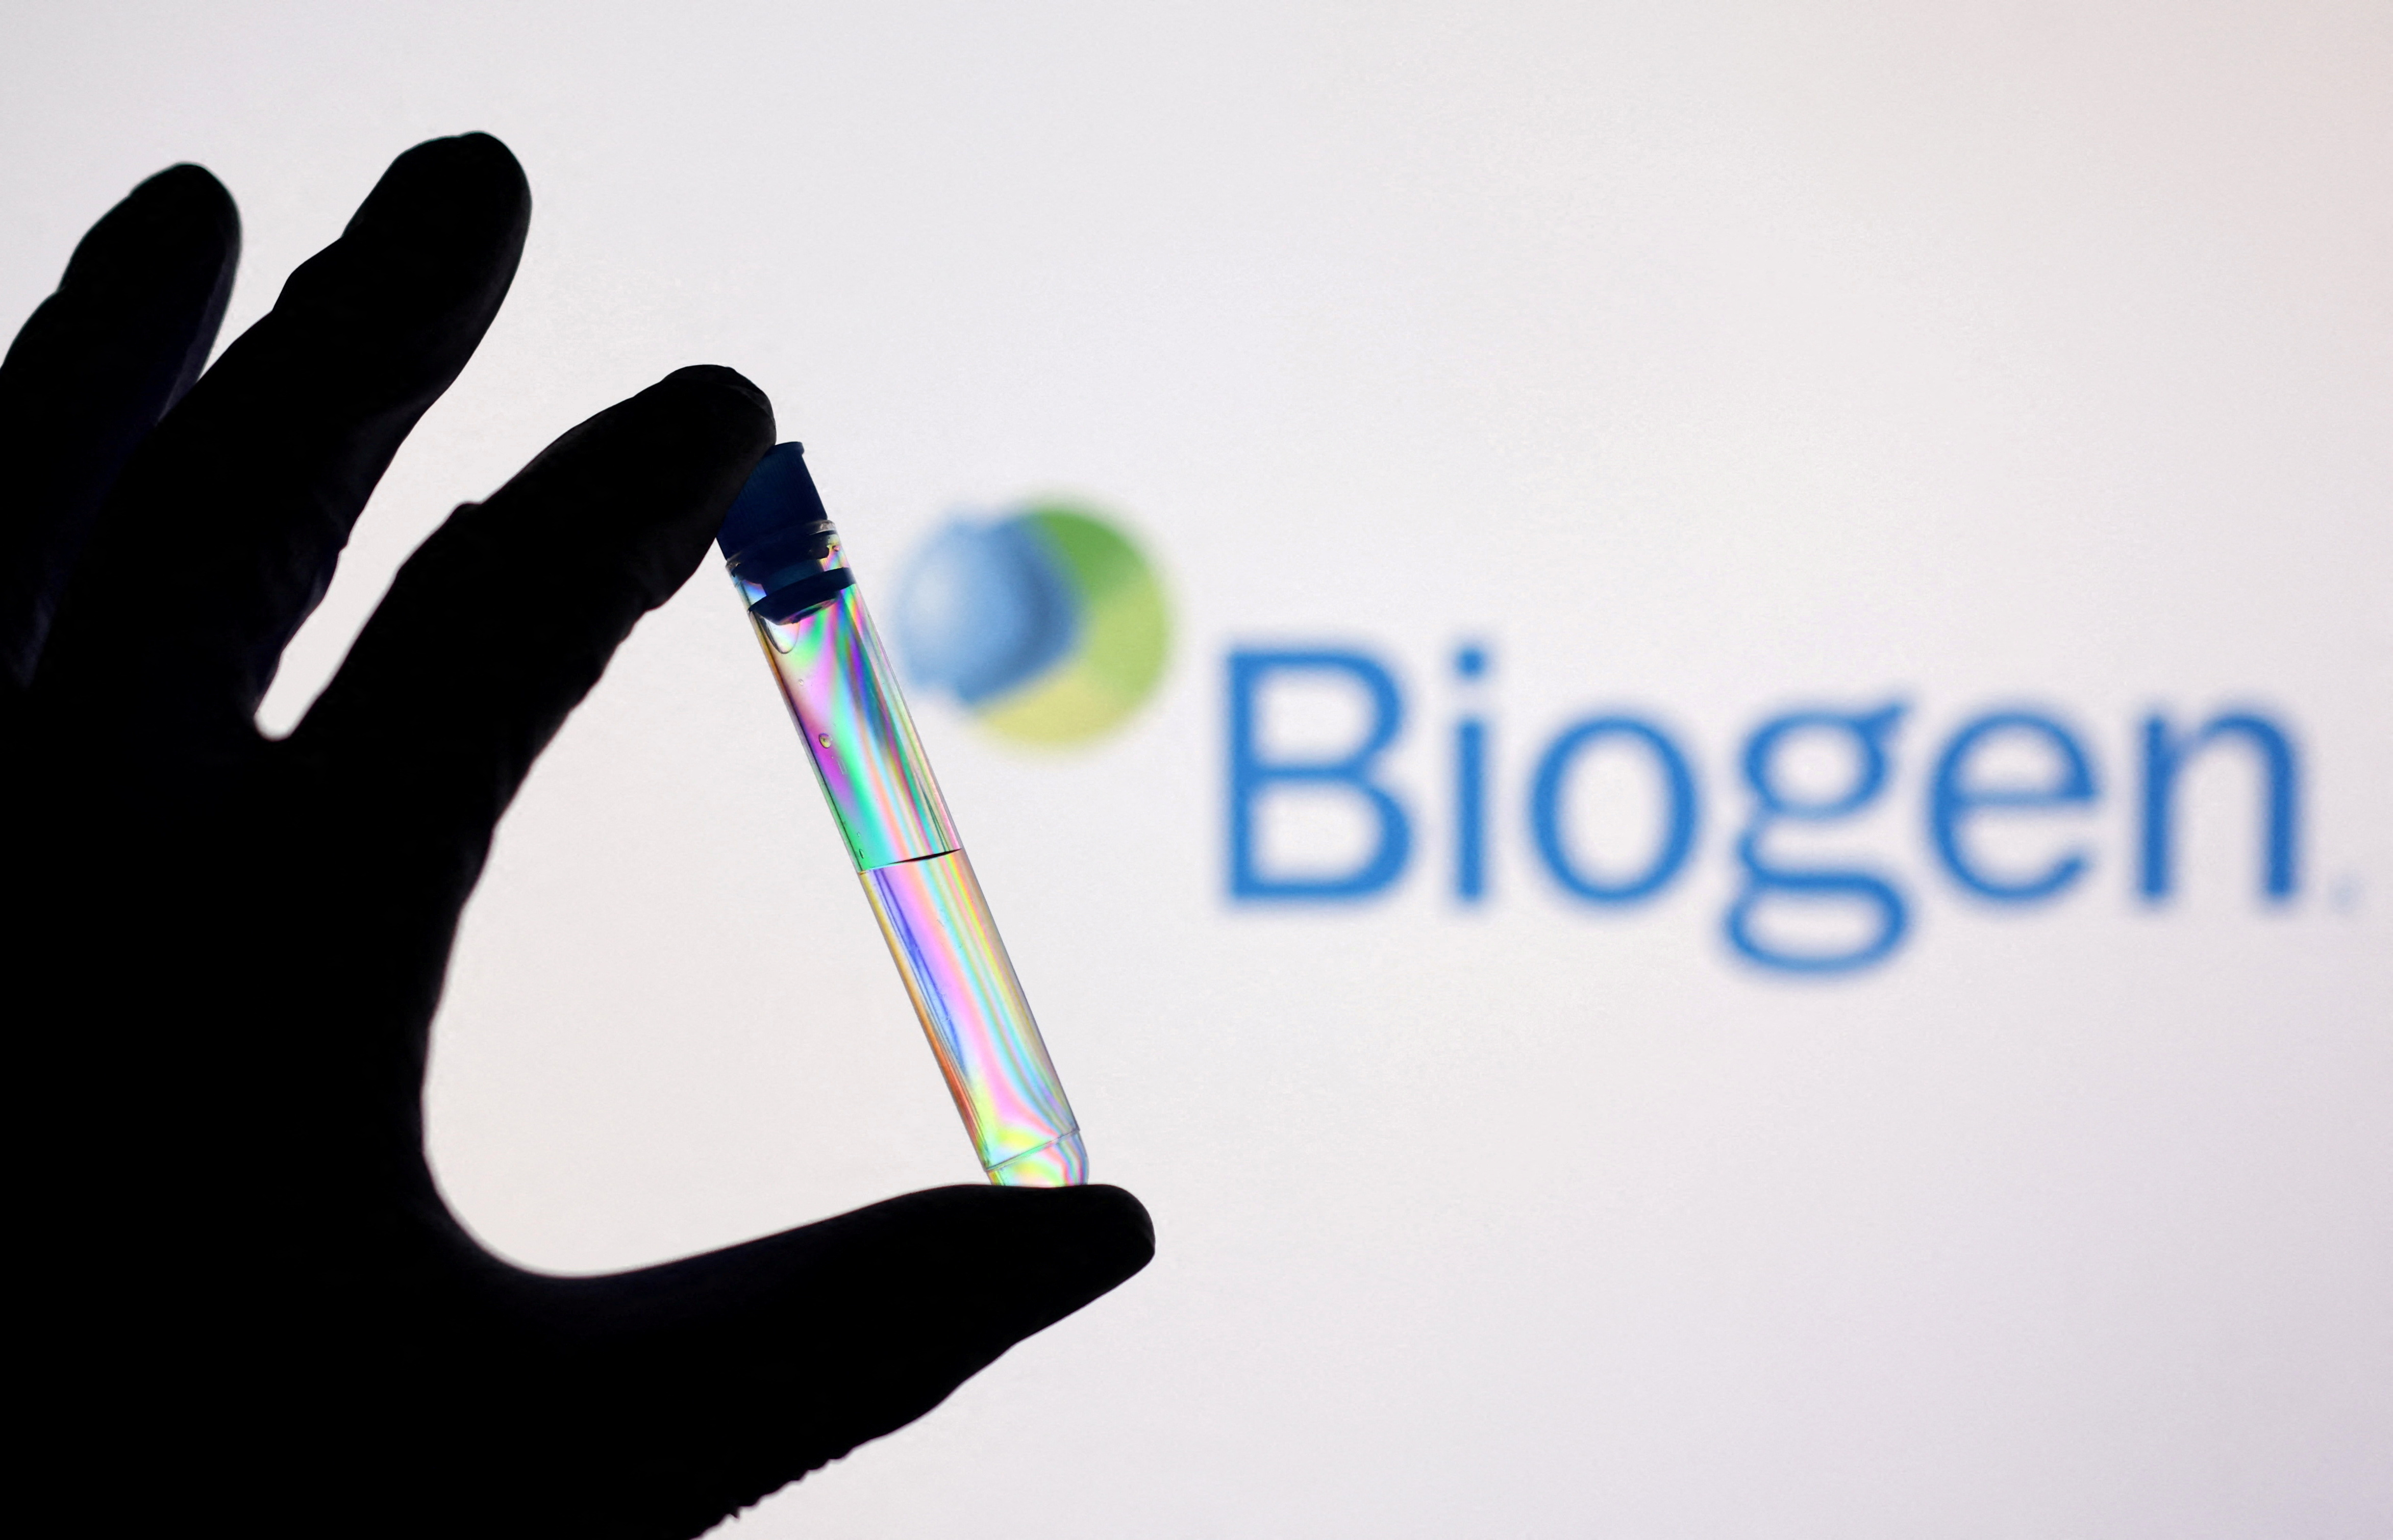 Illustration shows a test tube in front of displayed Biogen logo